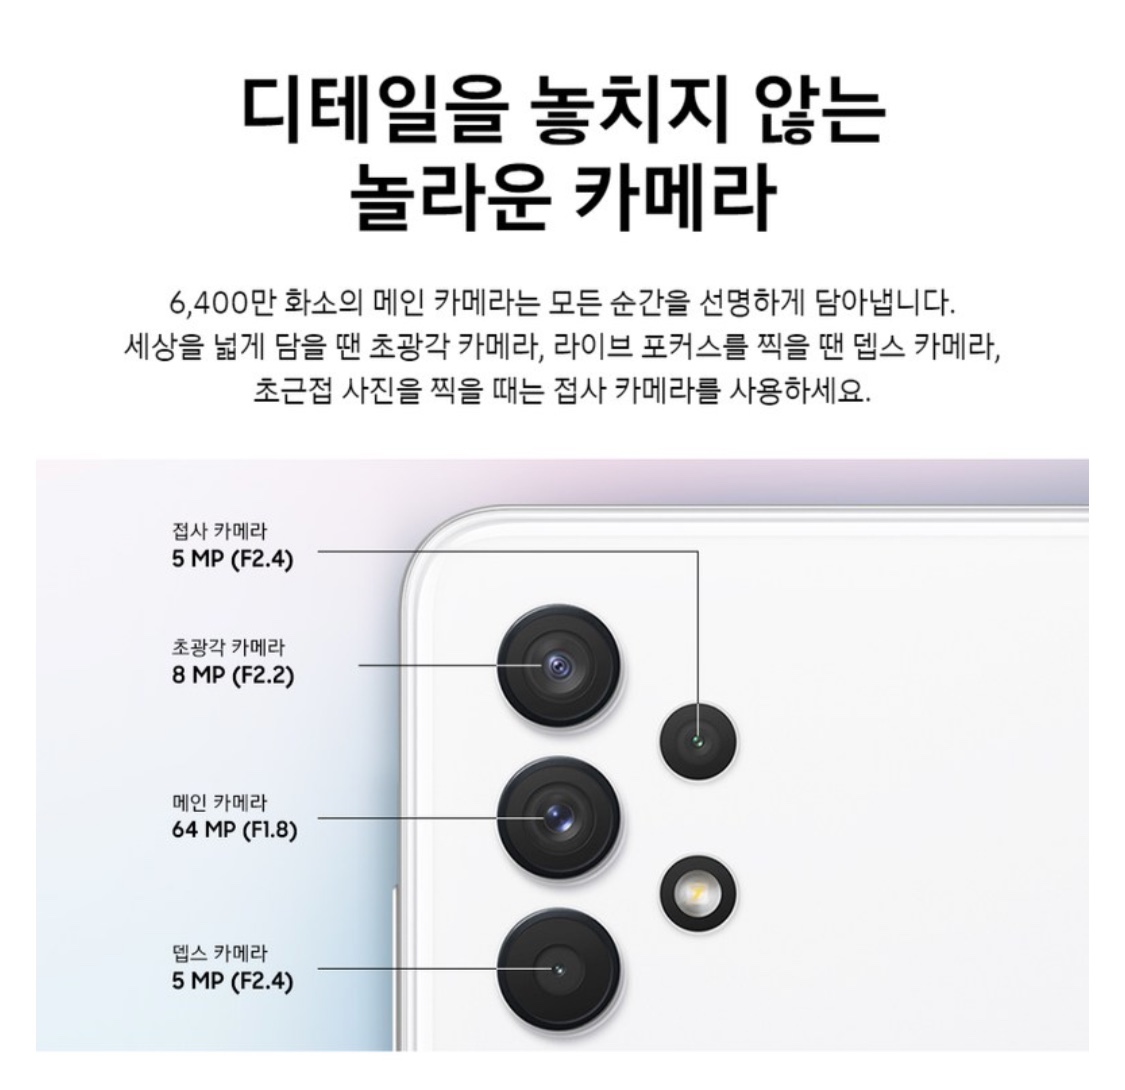 갤럭시 A32 제품 정보 (출처: 삼성닷컴)